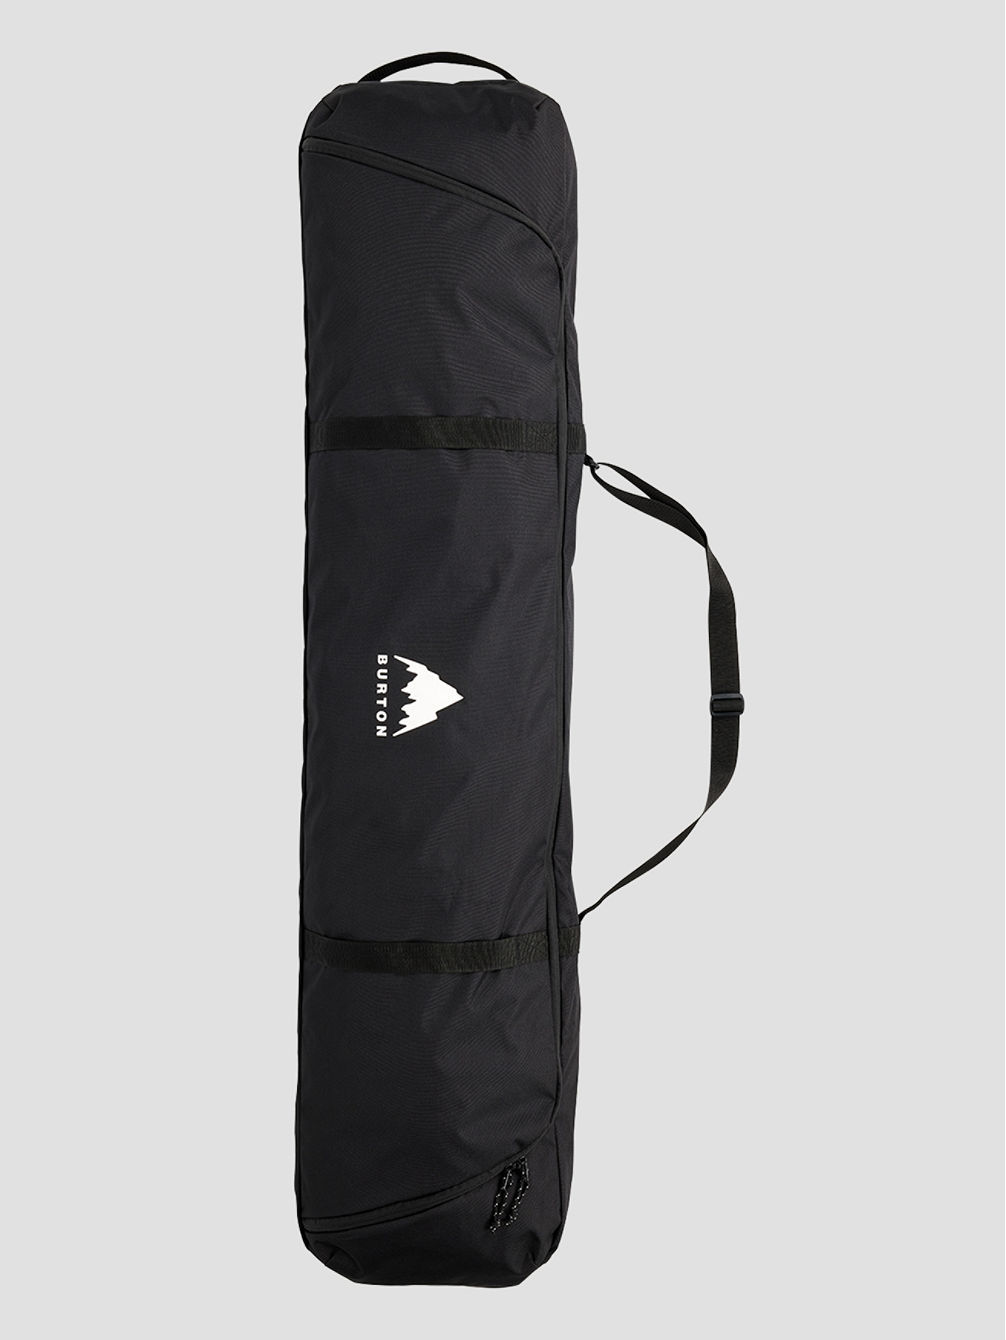 Space Sack 166 Snowboard-Tasche